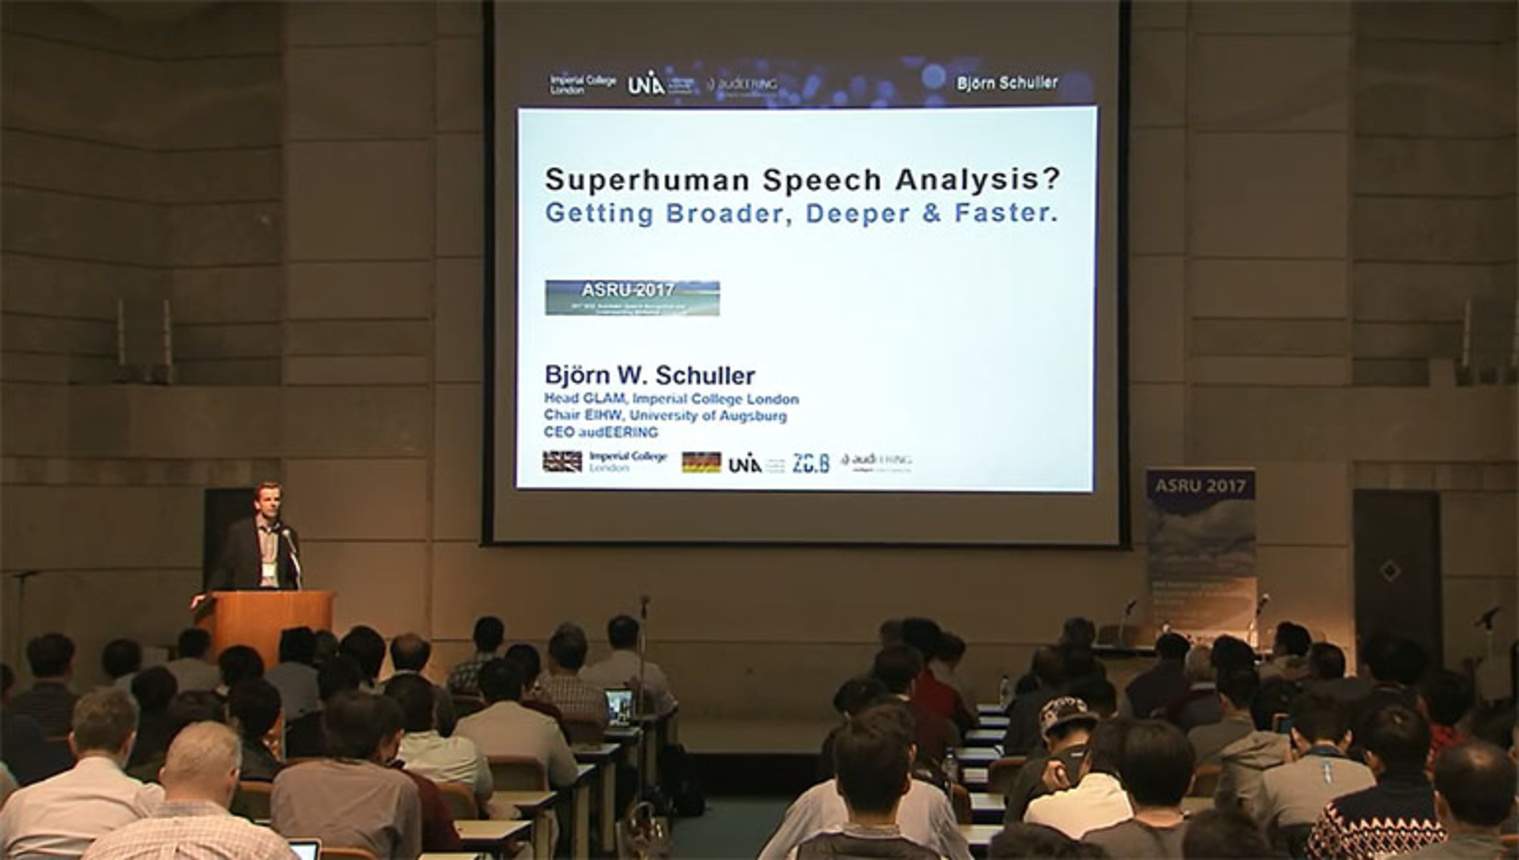 ASRU 2017: Bjorn Schuller - Super Human Speech Analysis? Getting Broader, Deeper and Faster